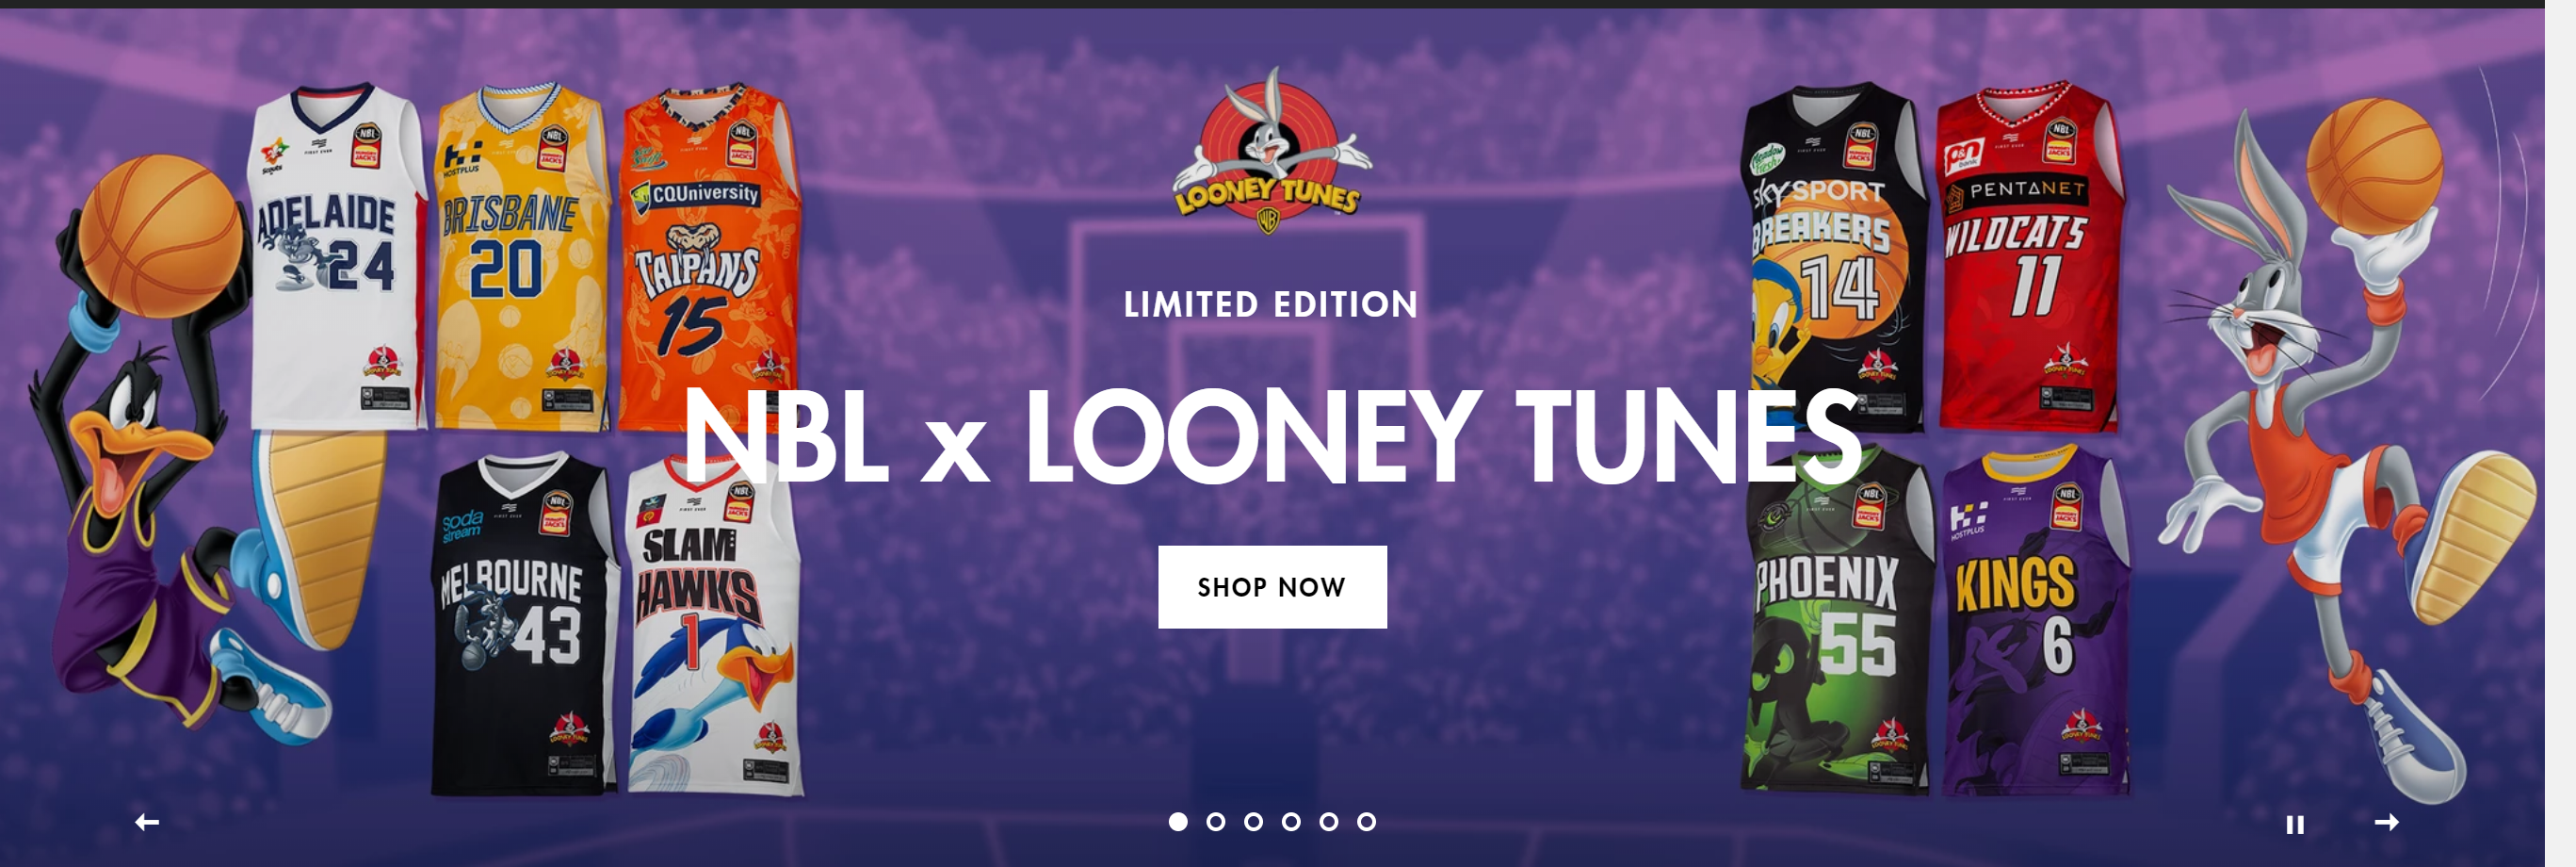 NBL X Looney Tunes Jerseys Release